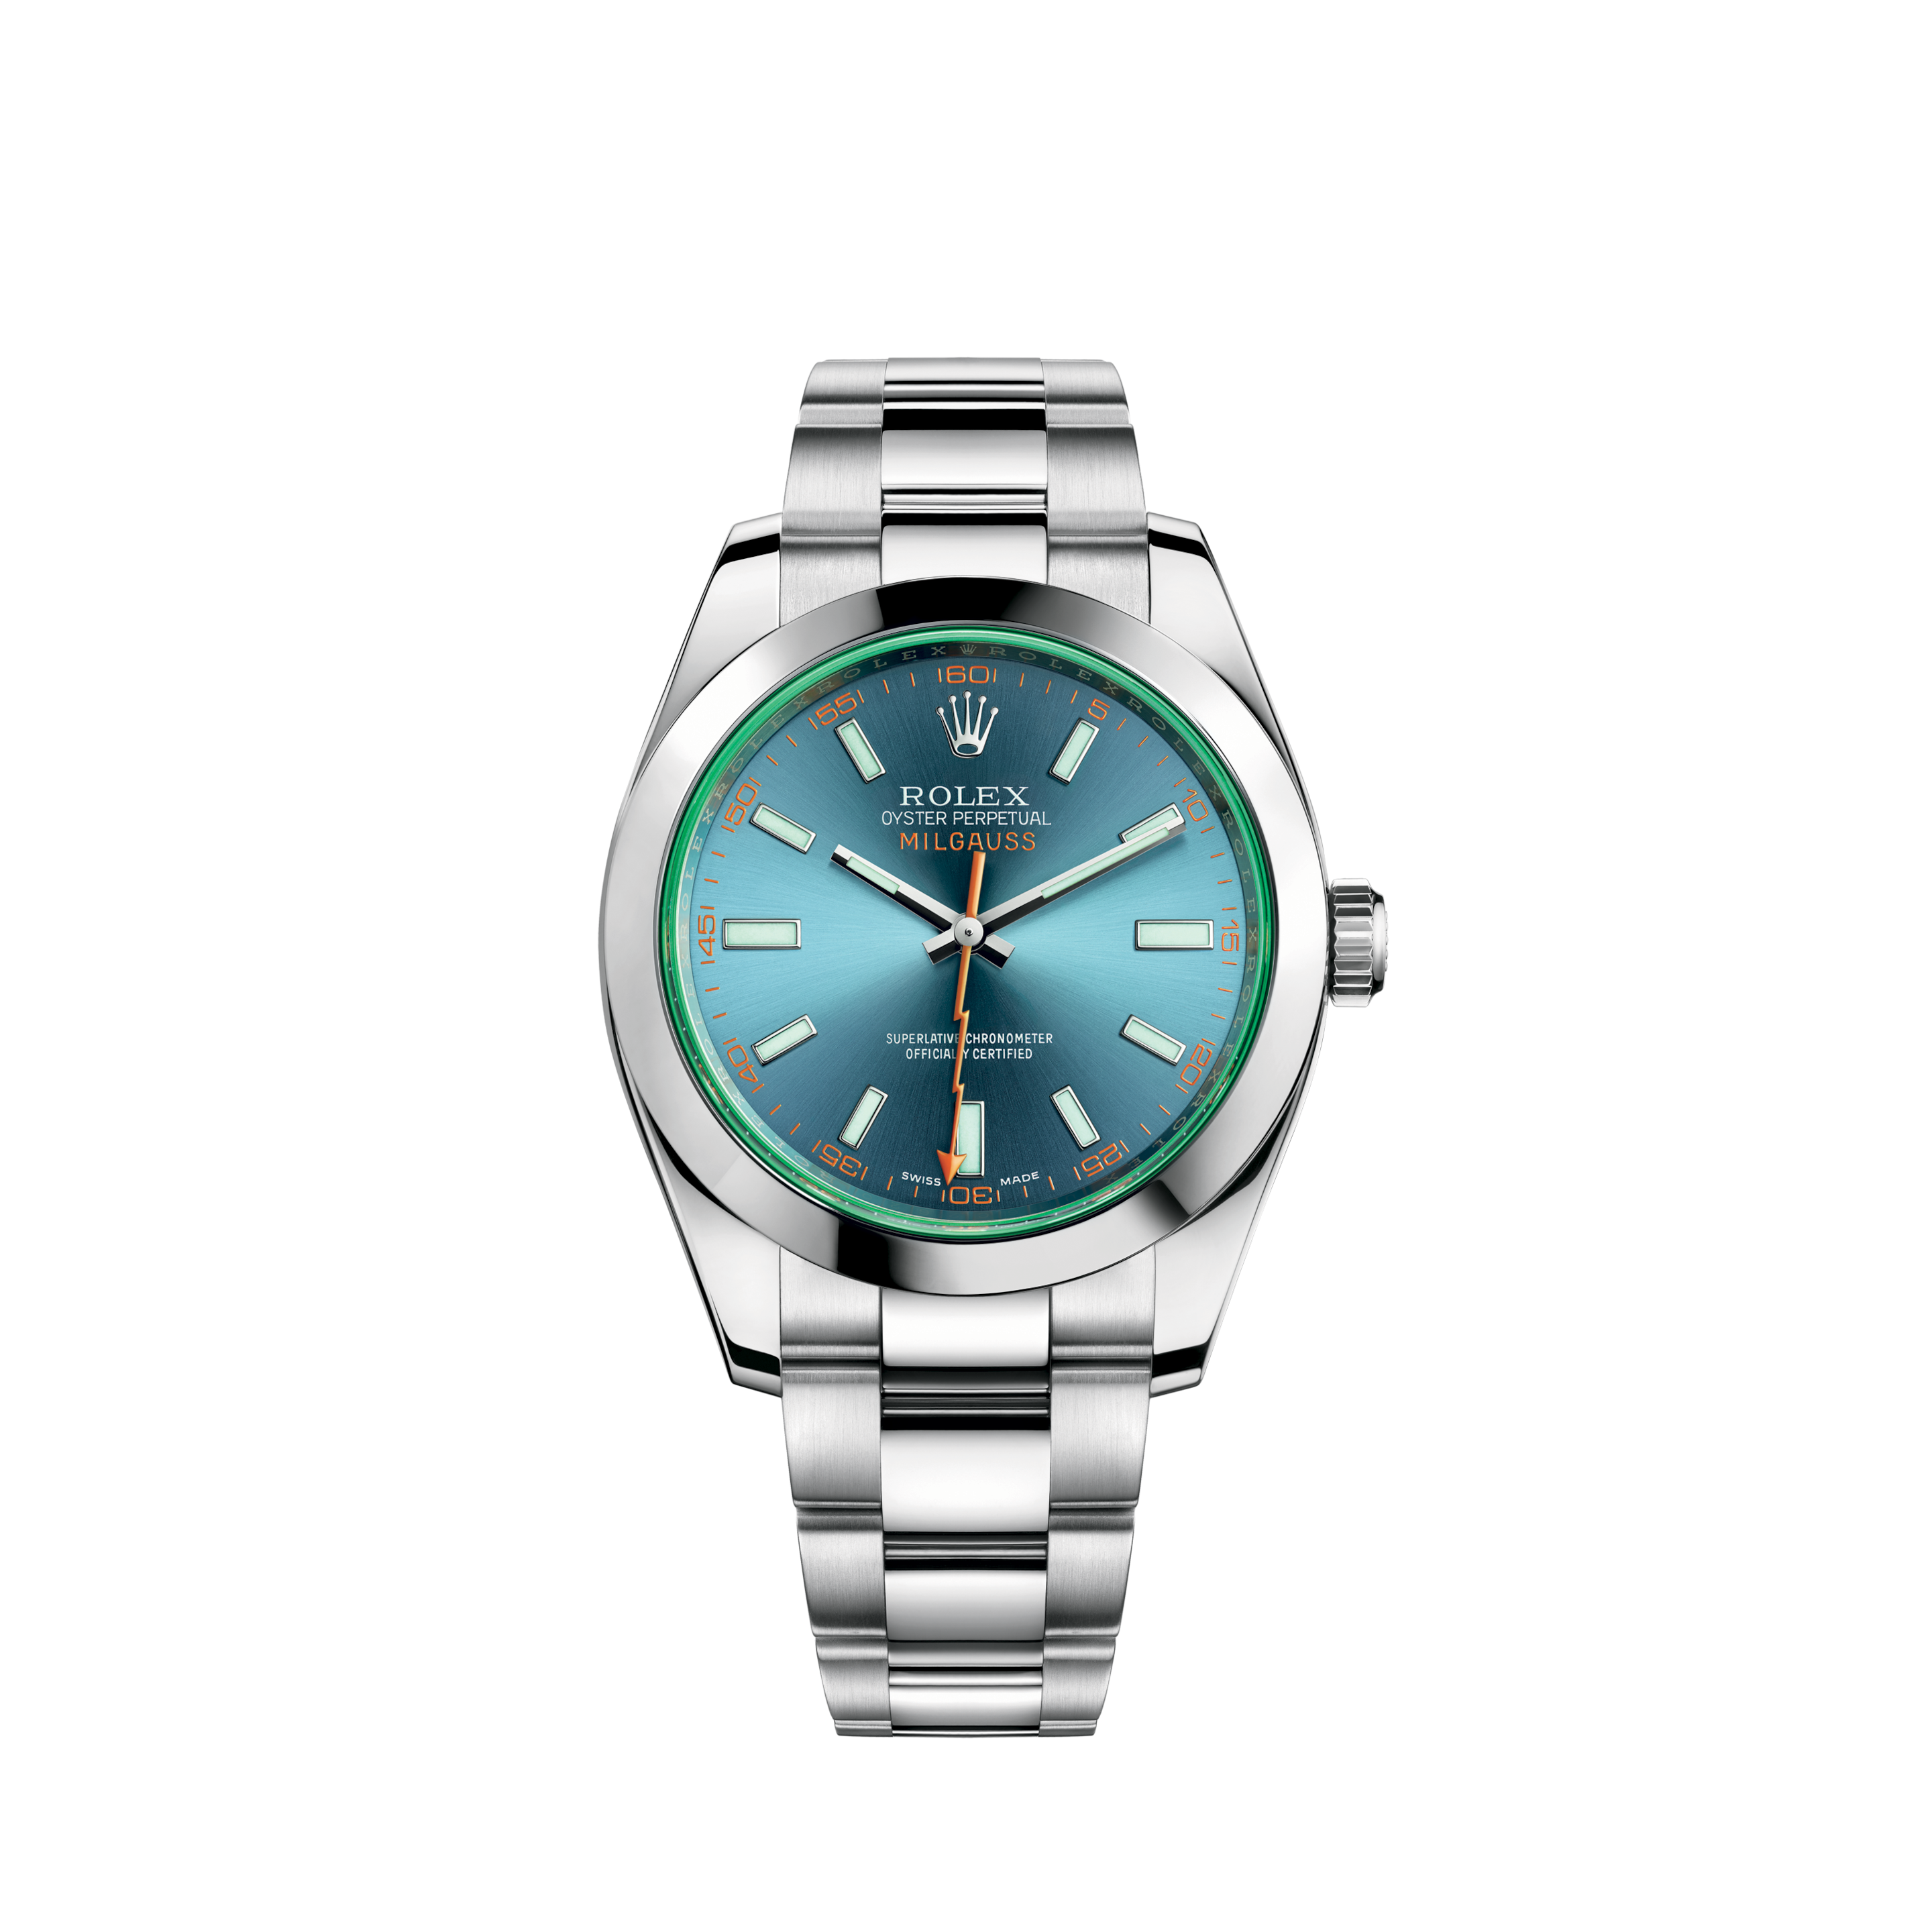 Rolex Datejust 126234 Stainless Steel 36mm watch